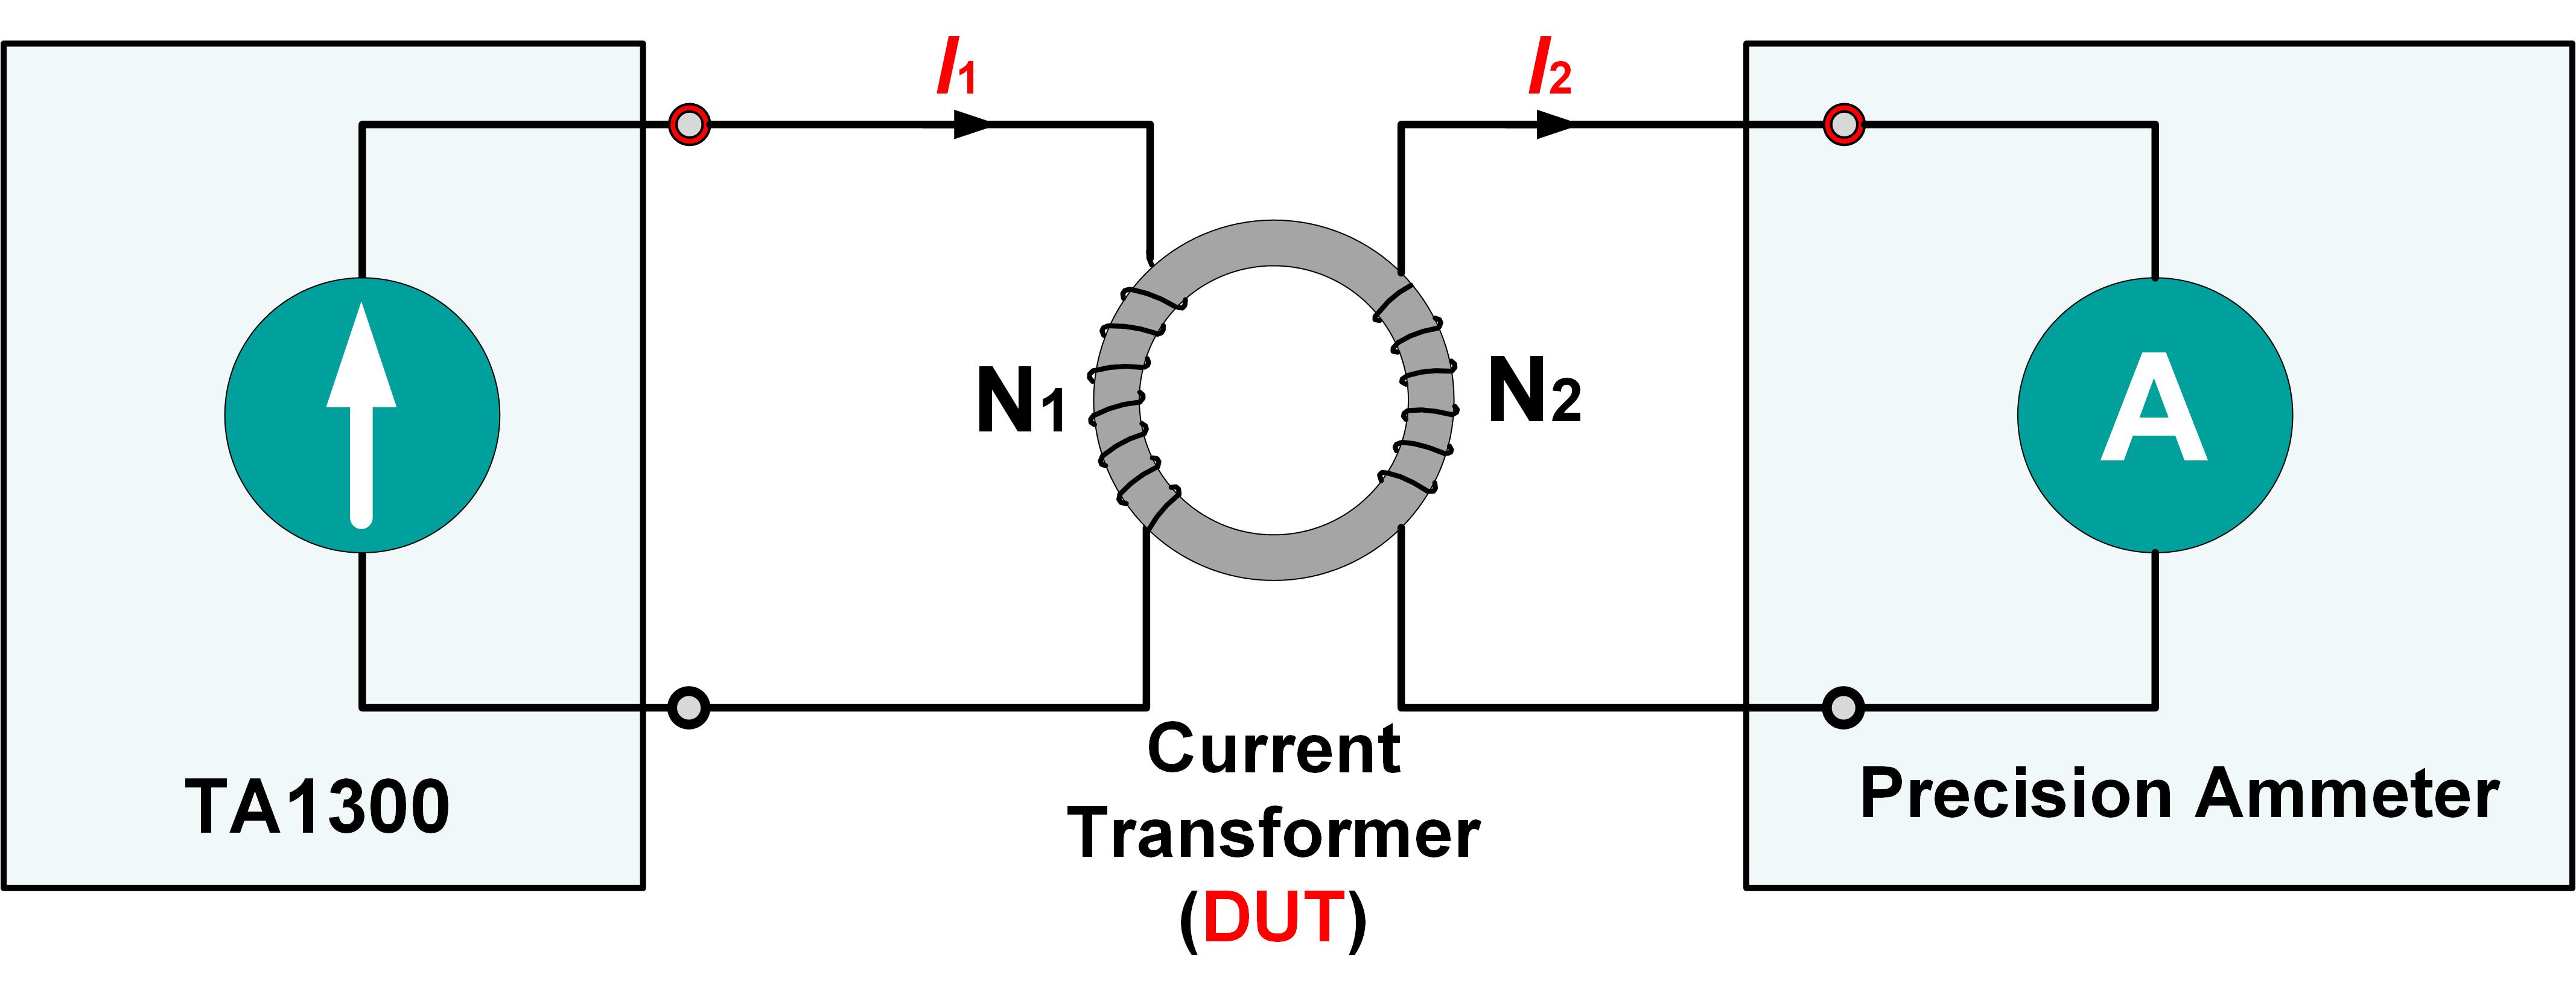 TA1300 AC Current Standard Source Calibrate current sensor or transformer